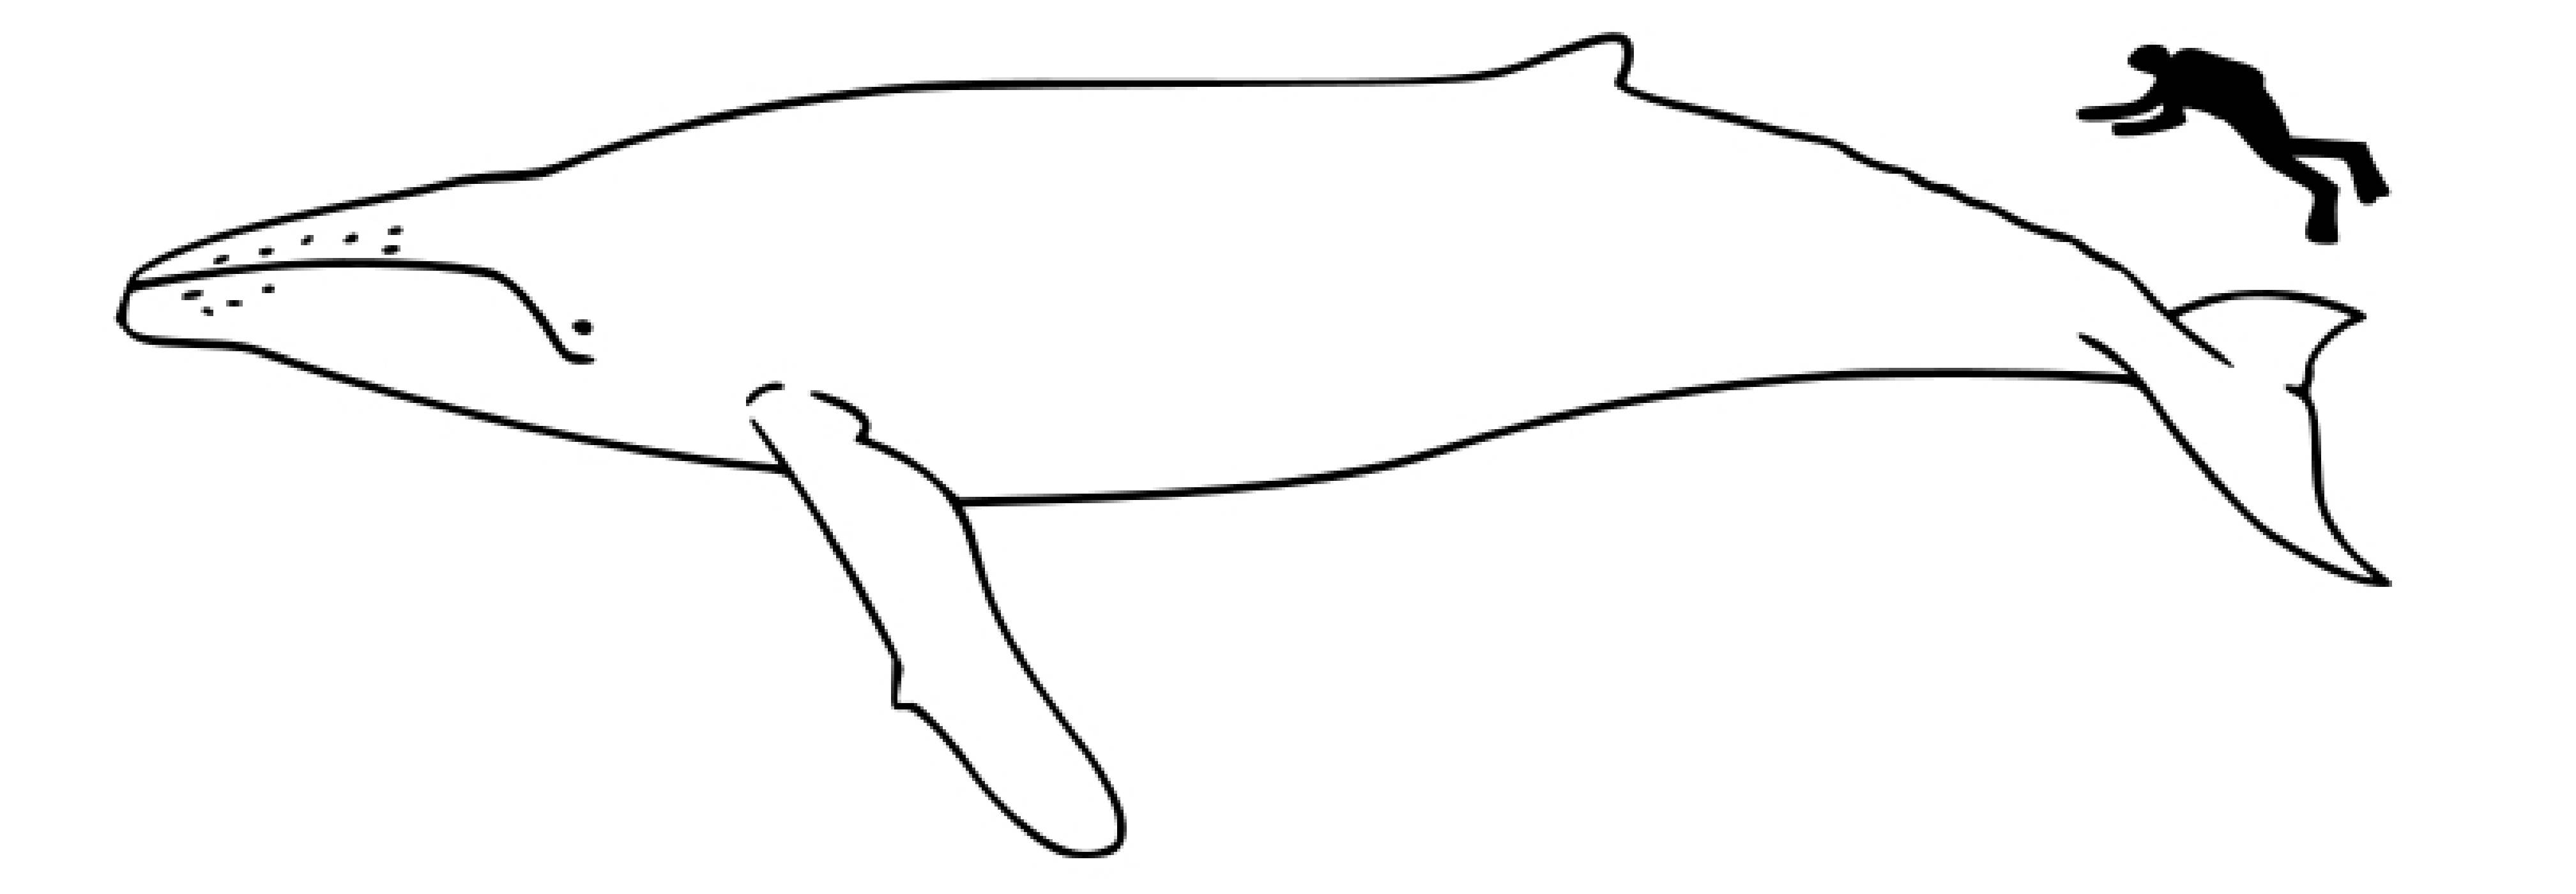 Финвал кит раскраска